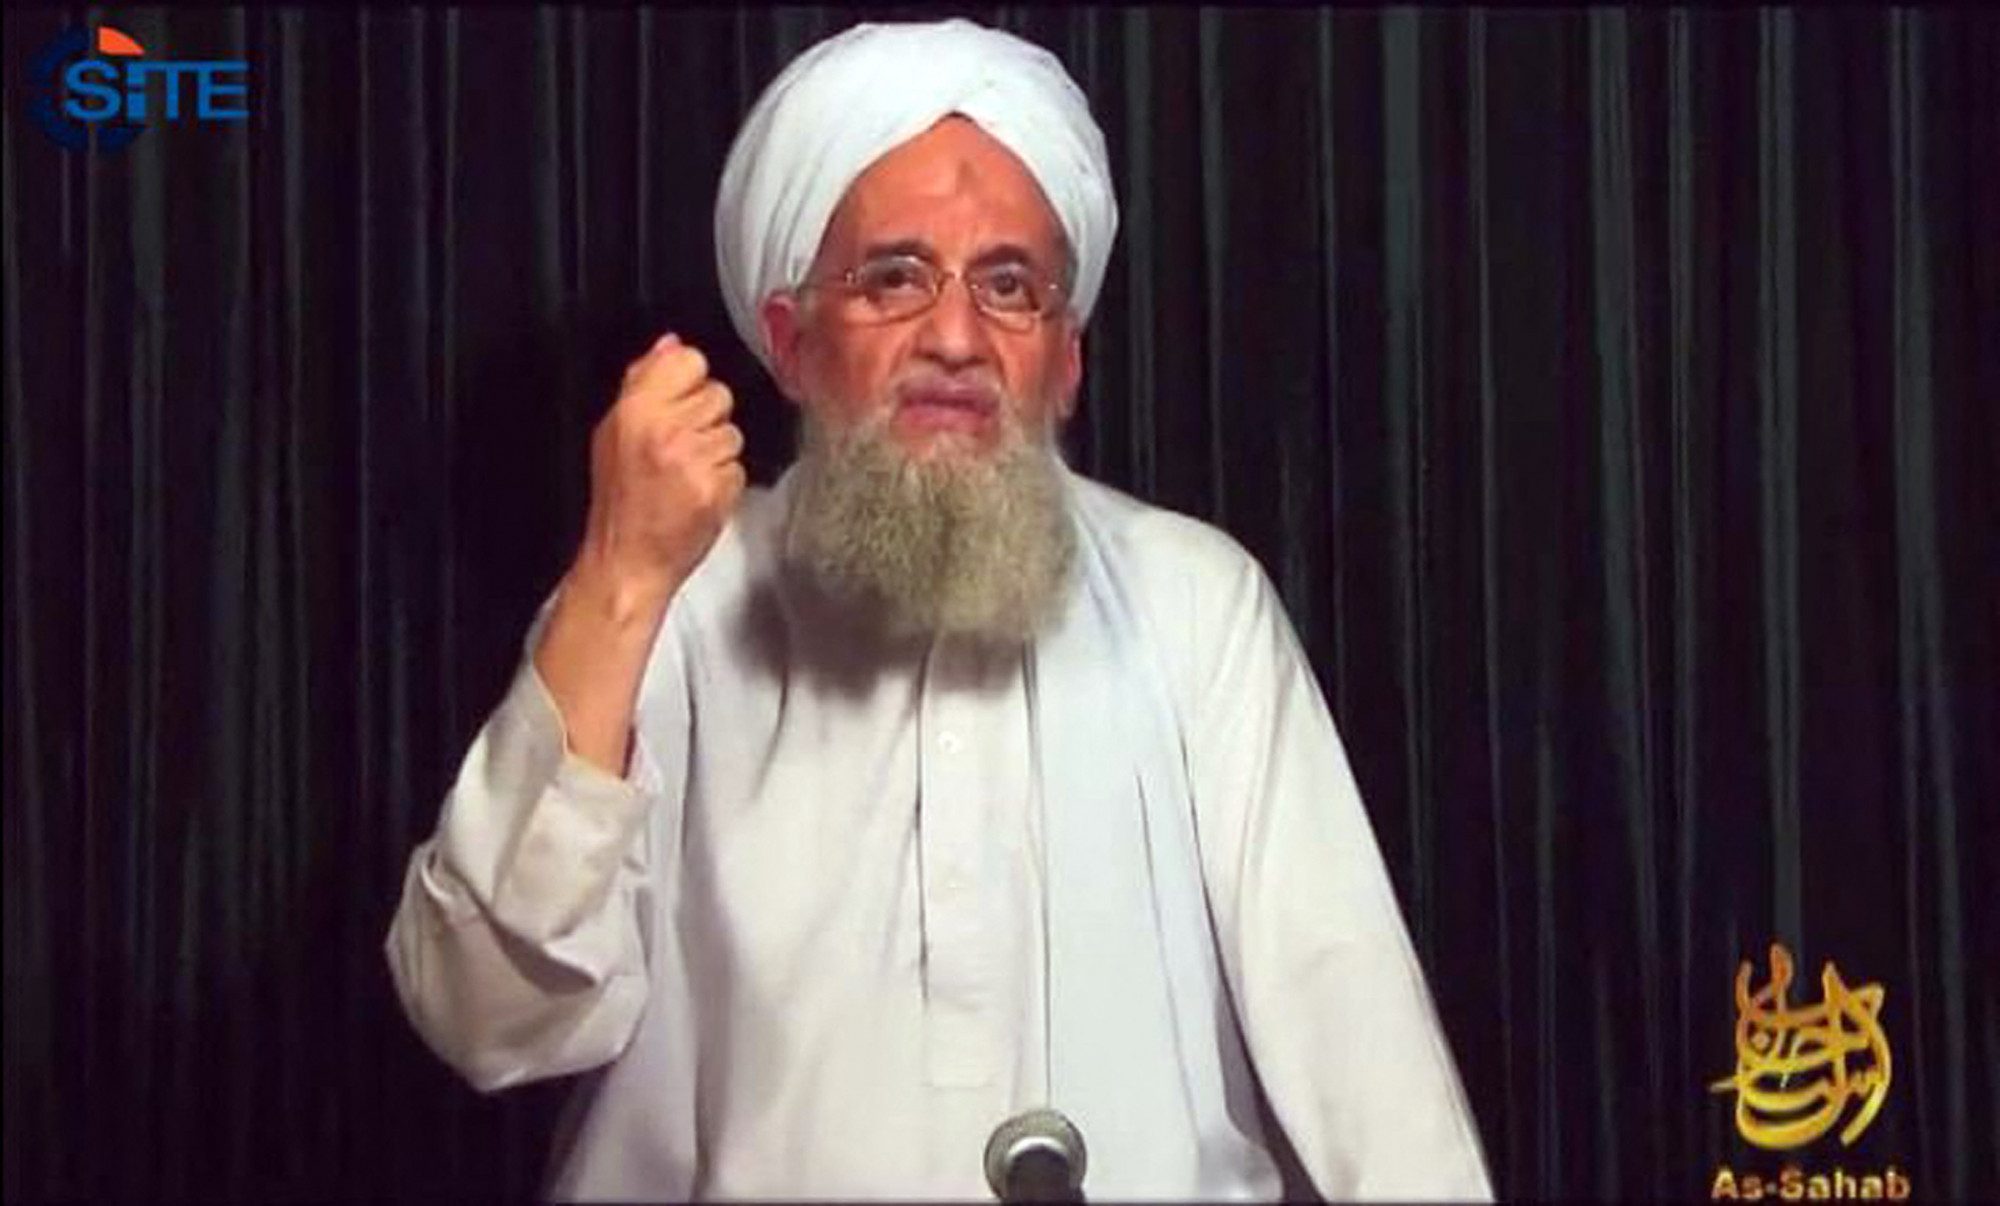 Megölték az al-Káida vezetőjét egy dróntámadásban